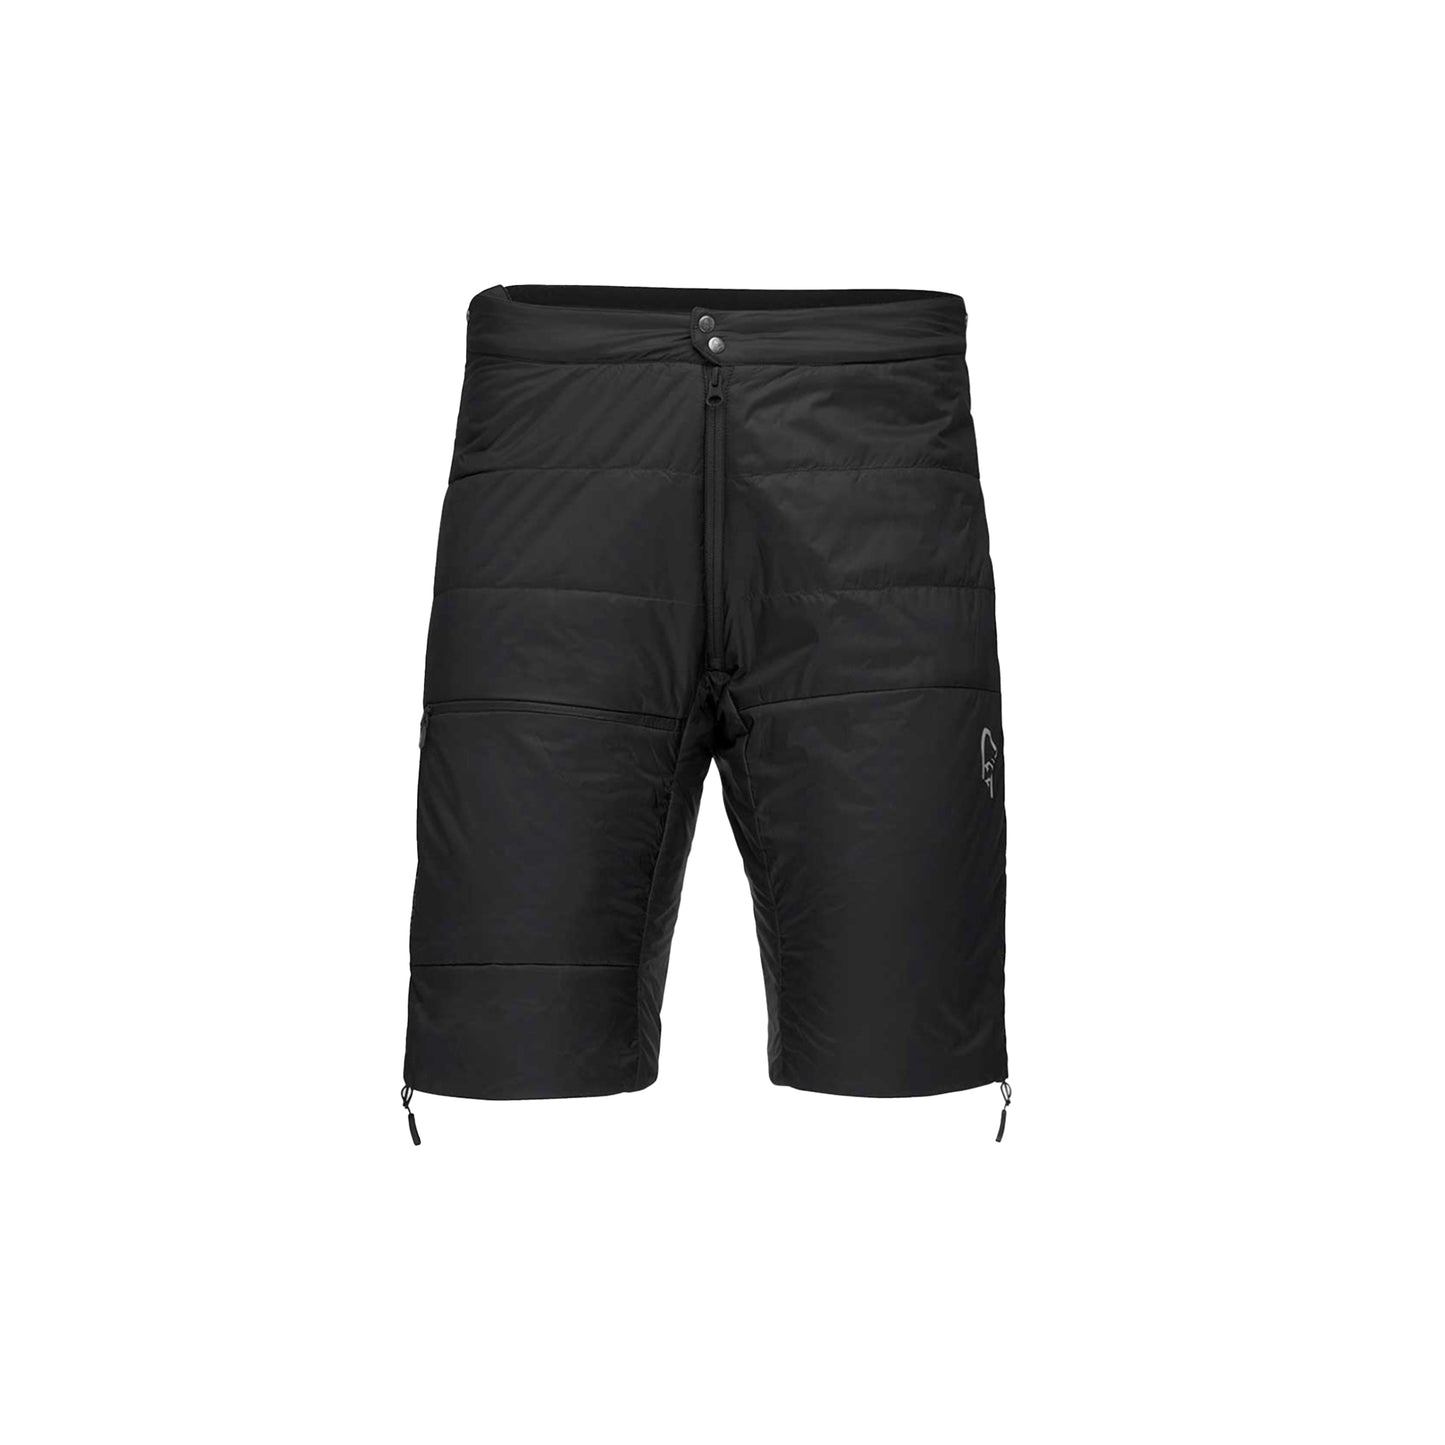 【Norrona】falketind thermo40 shorts (M)